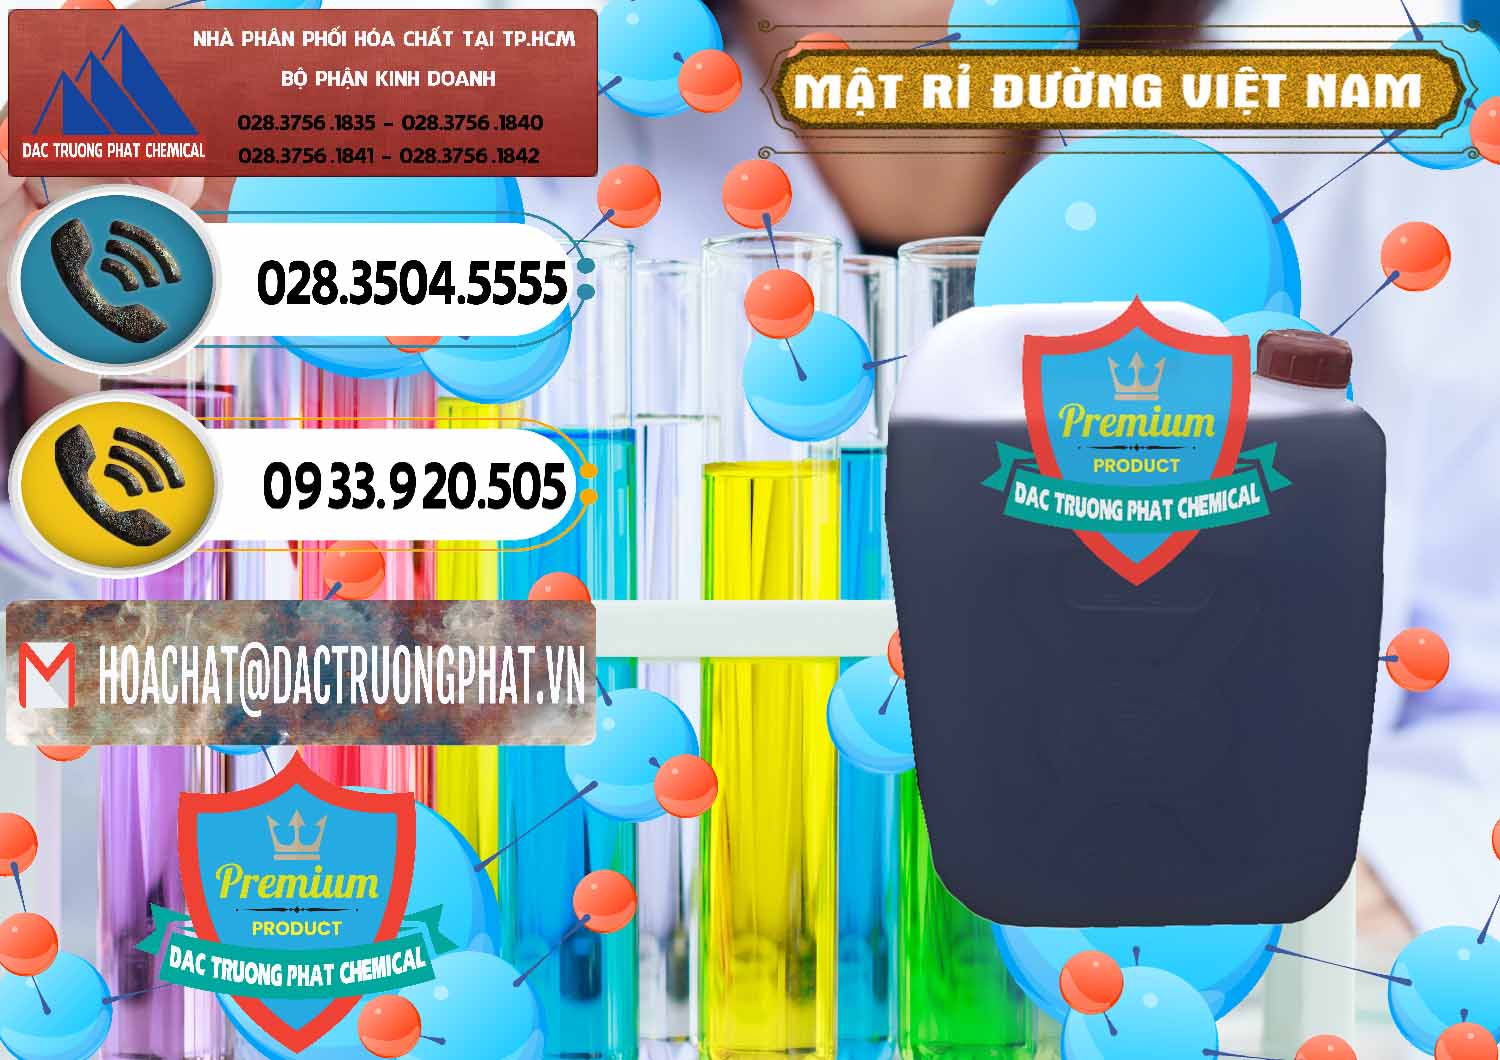 Cty bán - cung cấp Mật Rỉ Đường Việt Nam - 0306 - Nhà phân phối & bán hóa chất tại TP.HCM - hoachatdetnhuom.vn